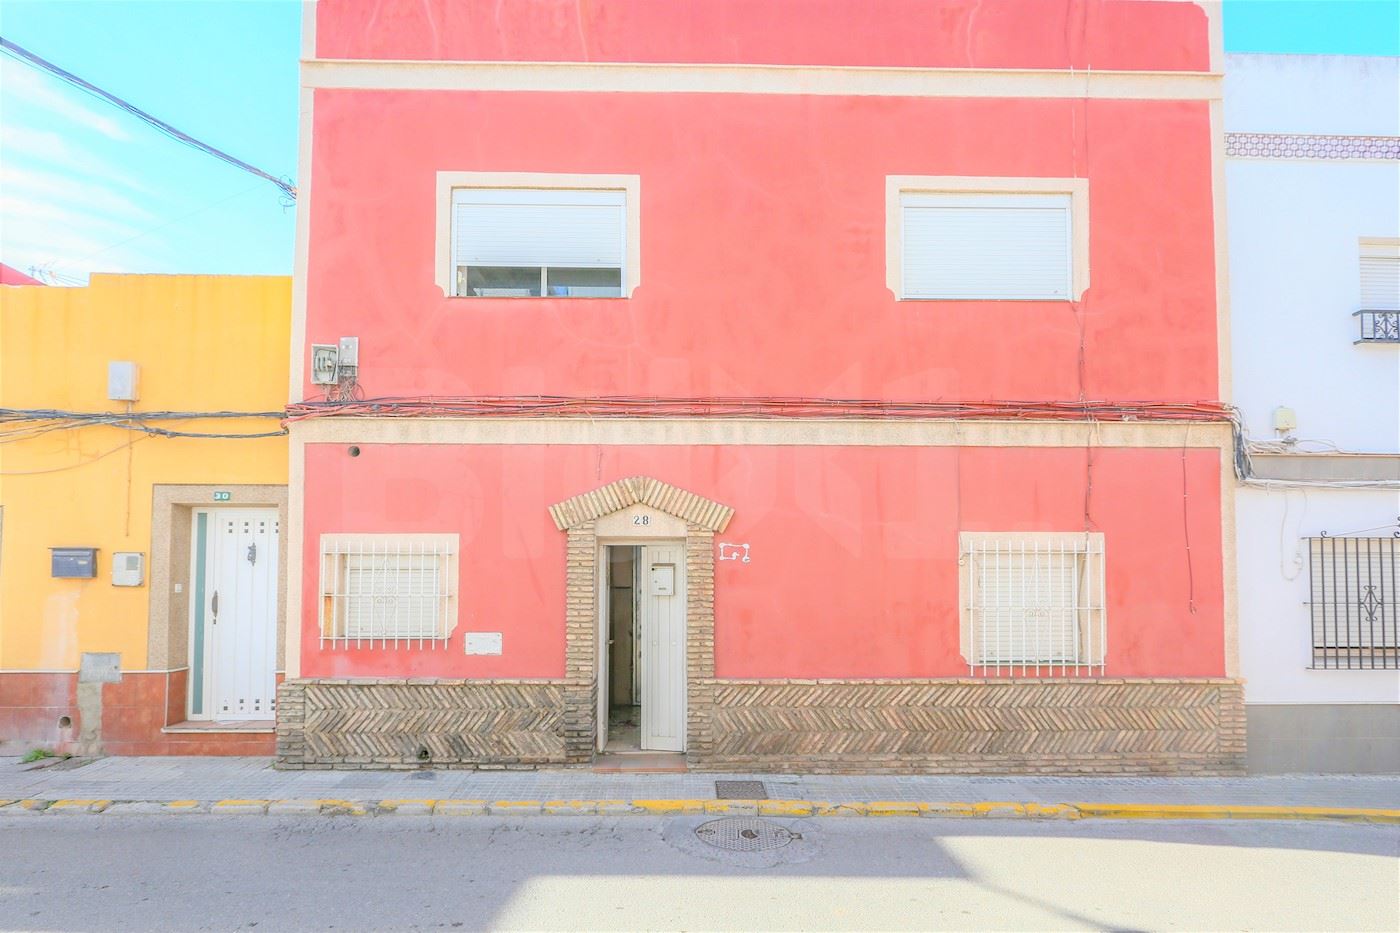 Calle Naveritos, Chiclana de la Frontera, Cádiz 1/26